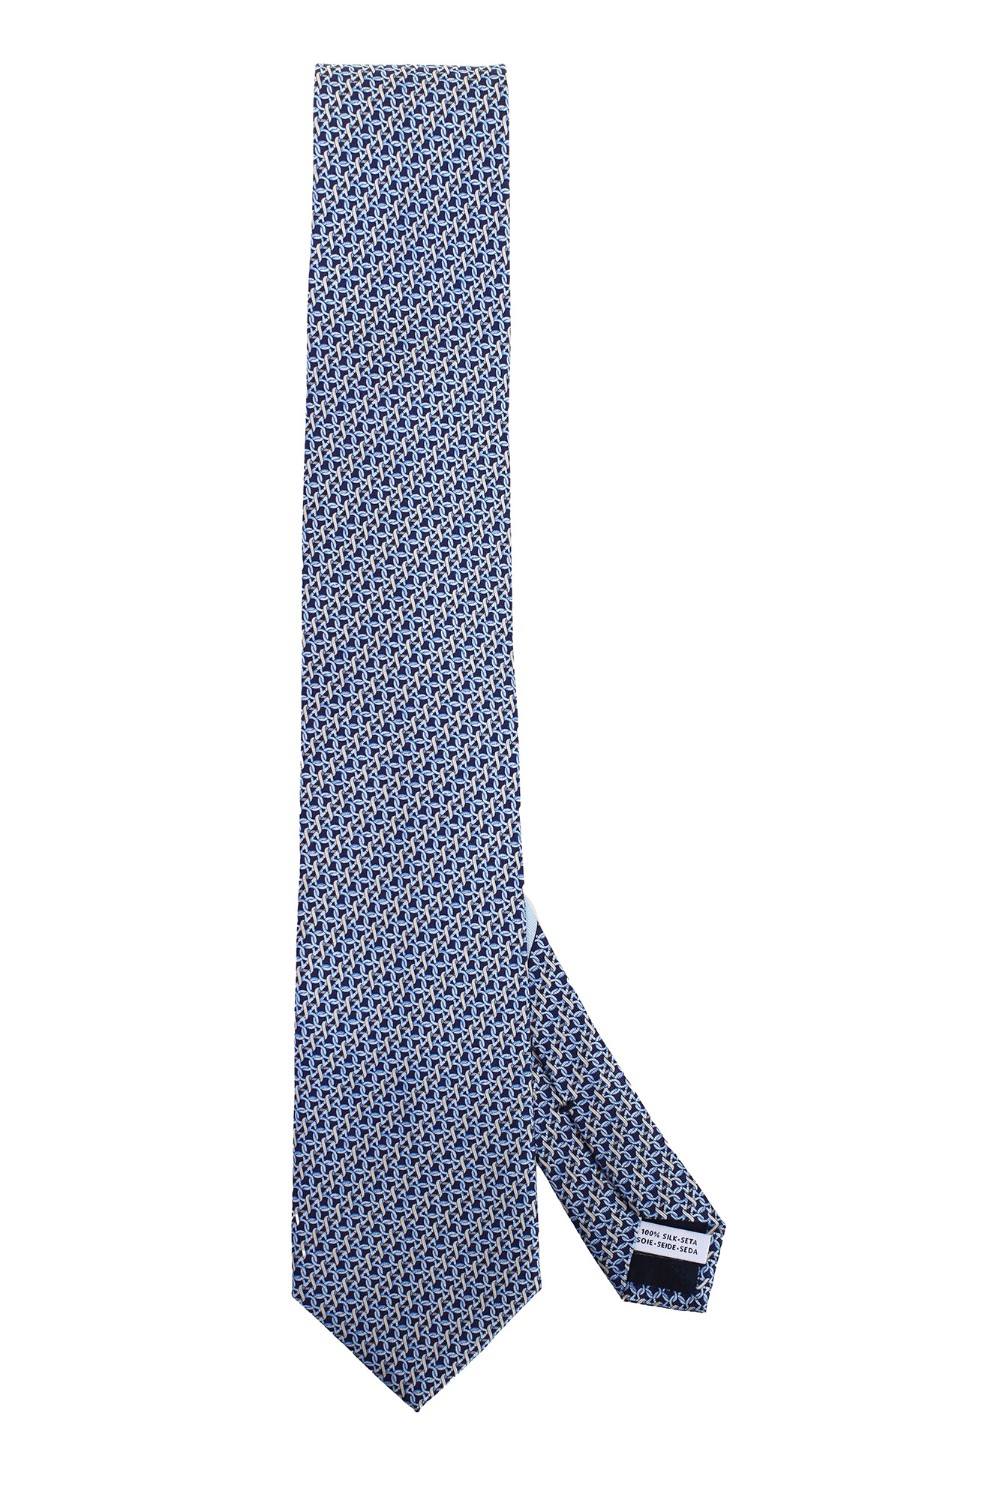 shop SALVATORE FERRAGAMO  Cravatta: Salvatore Ferragamo cravatta in seta stampa Gancini.
Larghezza al fondo 8 cm.
Composizione: 100% seta.
Made in Italia.. 350785 REGALE-757579 number 2746696